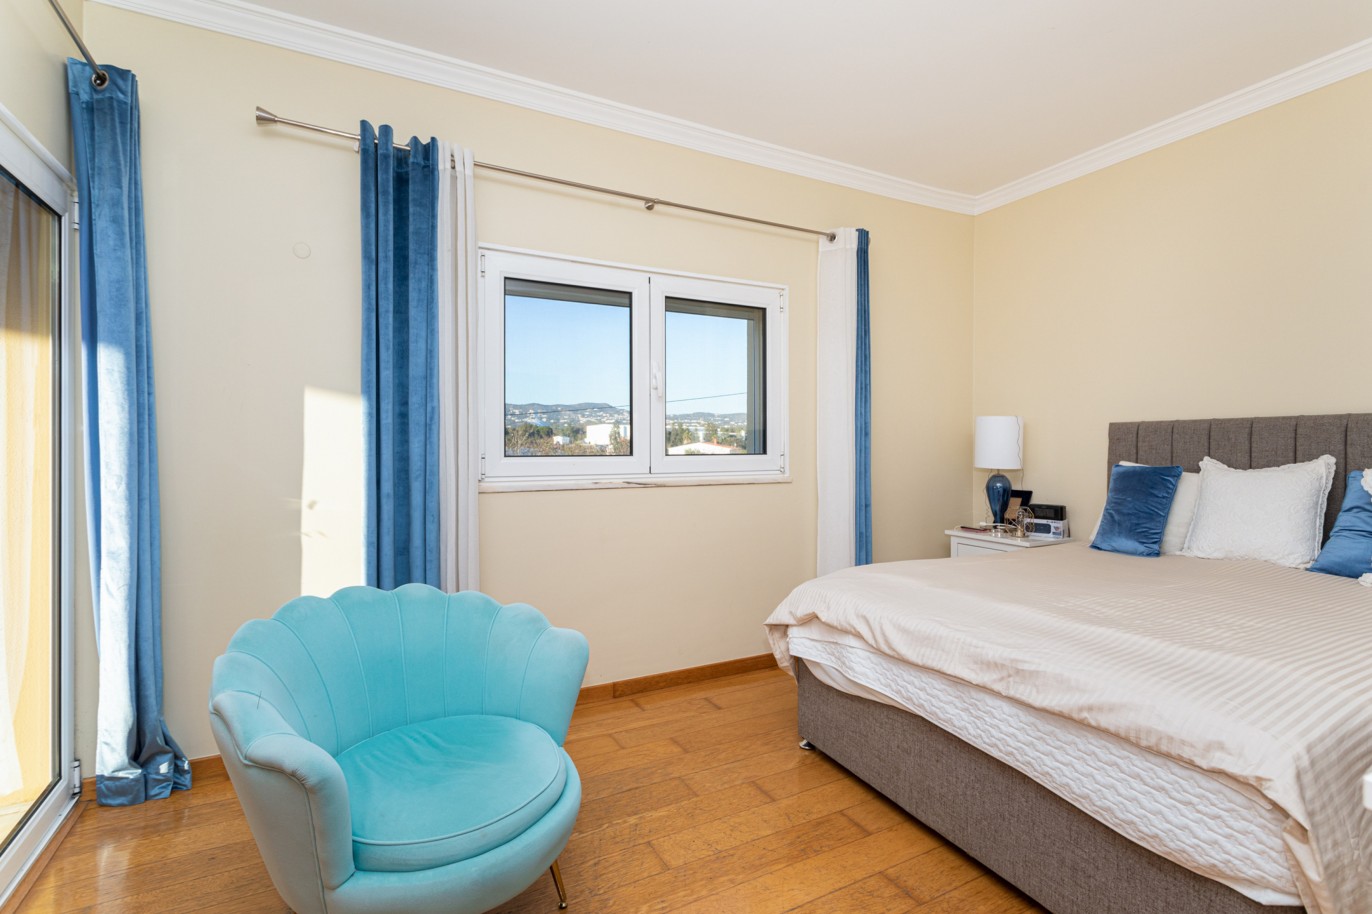 Villa de 4 dormitorios en zona de prestigio, en venta en Almancil, Algarve_217662